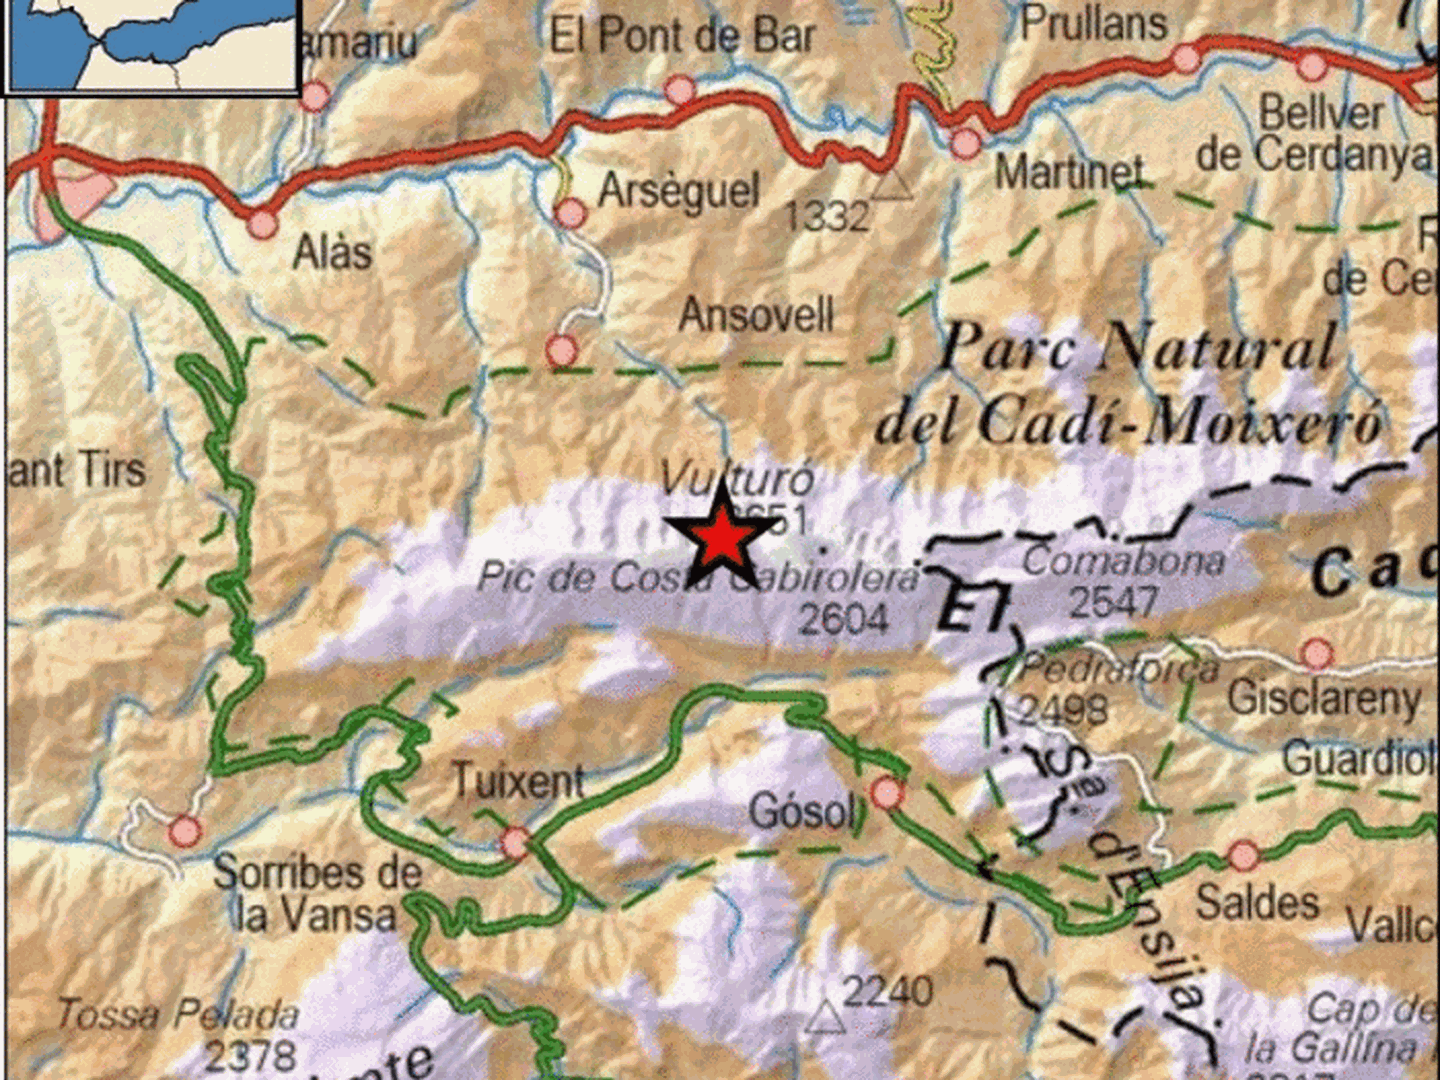 Epicentro del terremoto en las proximidades de Cava. (IGN)